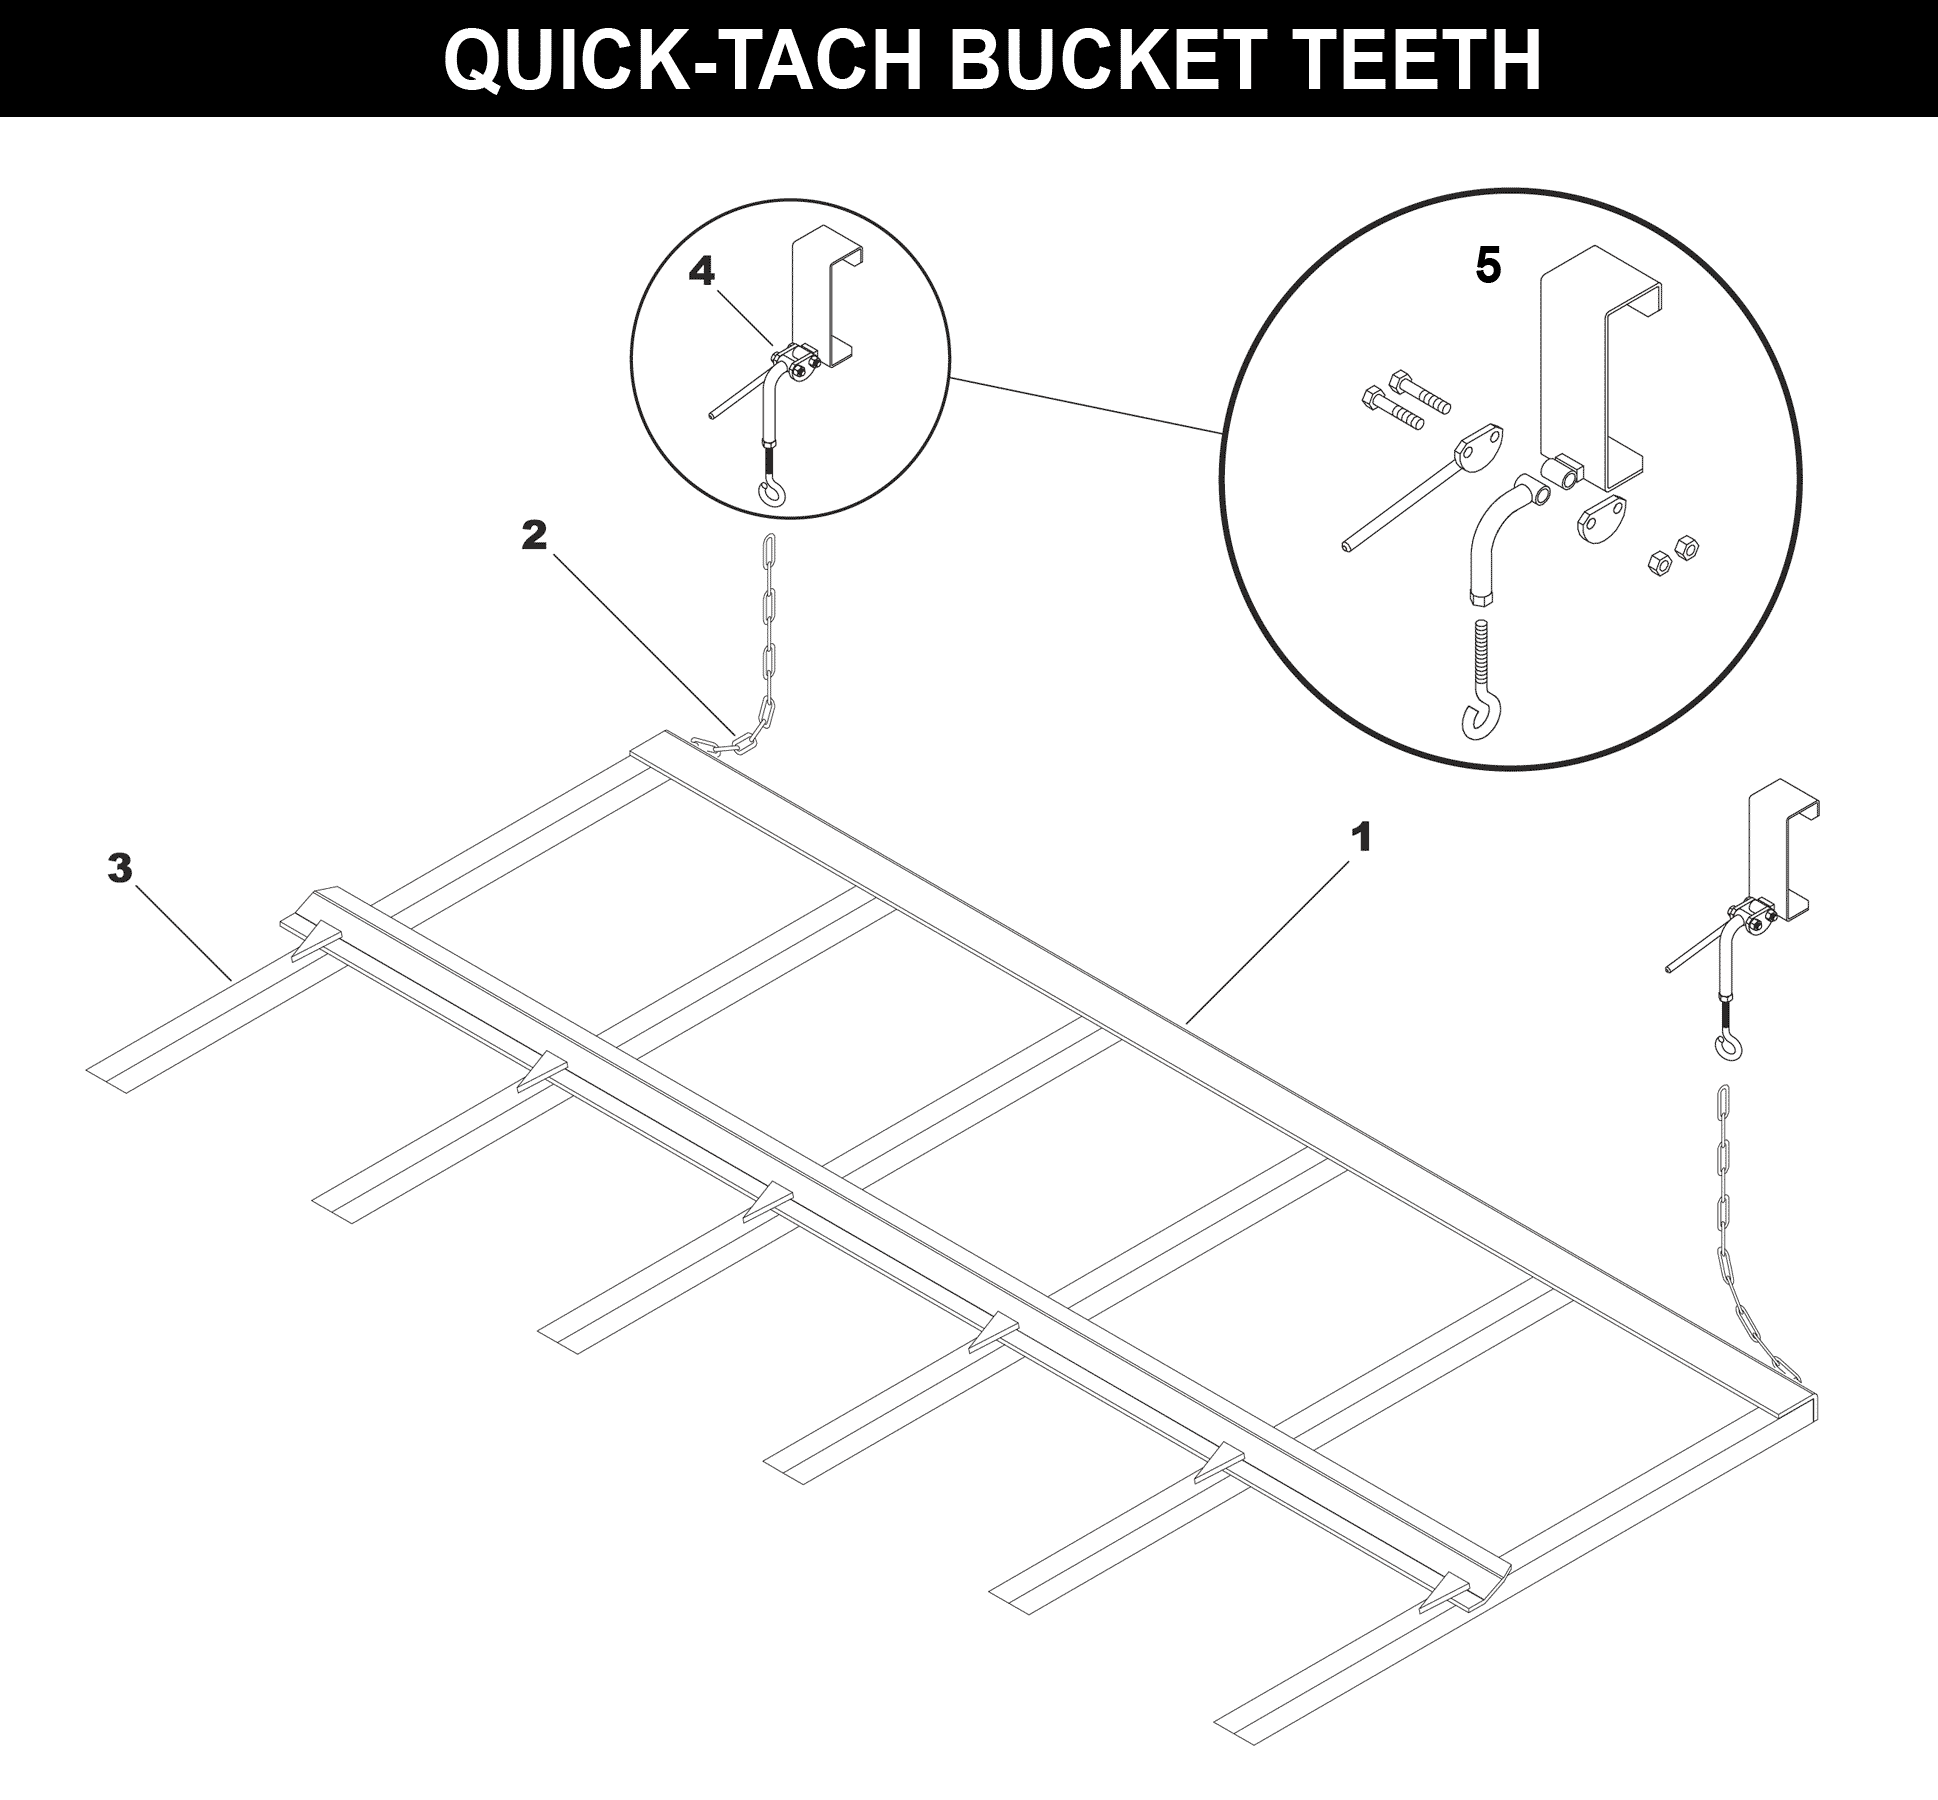 Quick-Tach Bucket Teeth